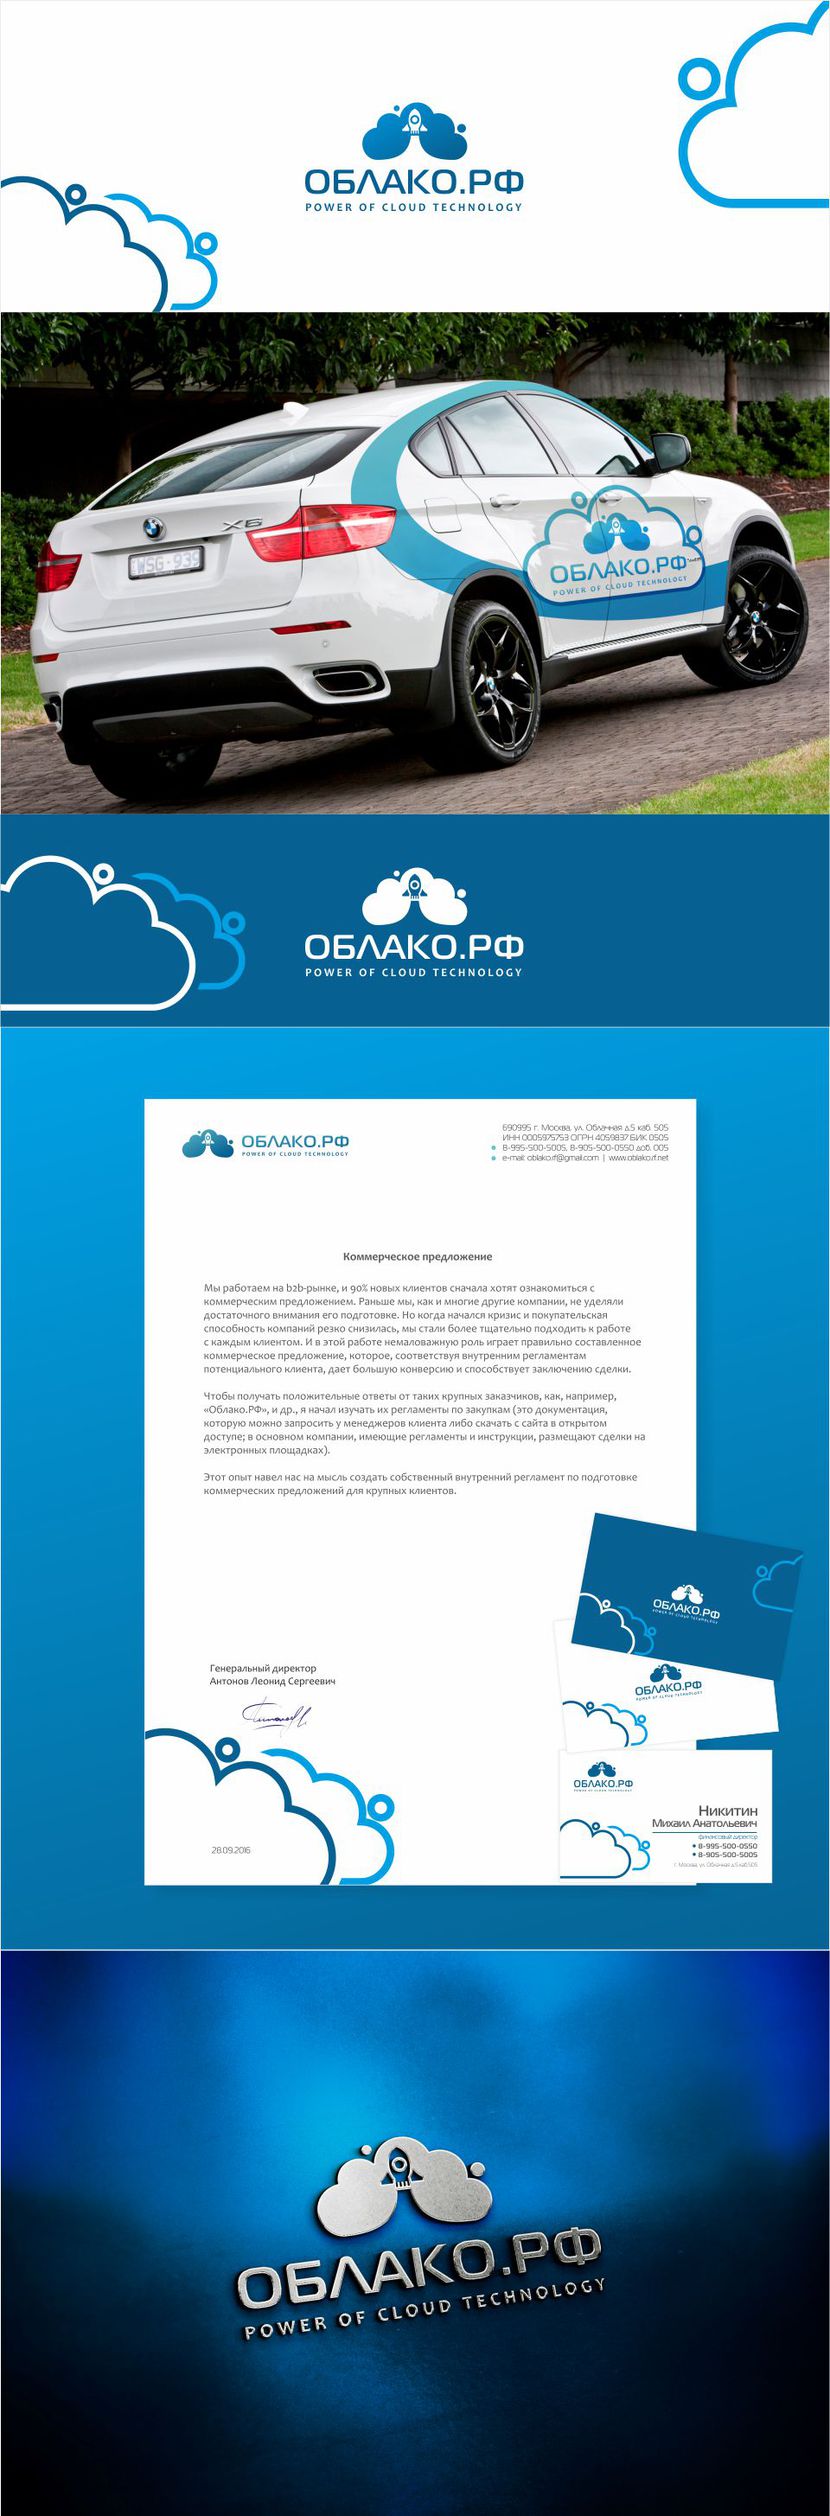 Добавил элементы фирменного стиля - Разработка логотипа для Провайдера облачных технологий - Облако.РФ